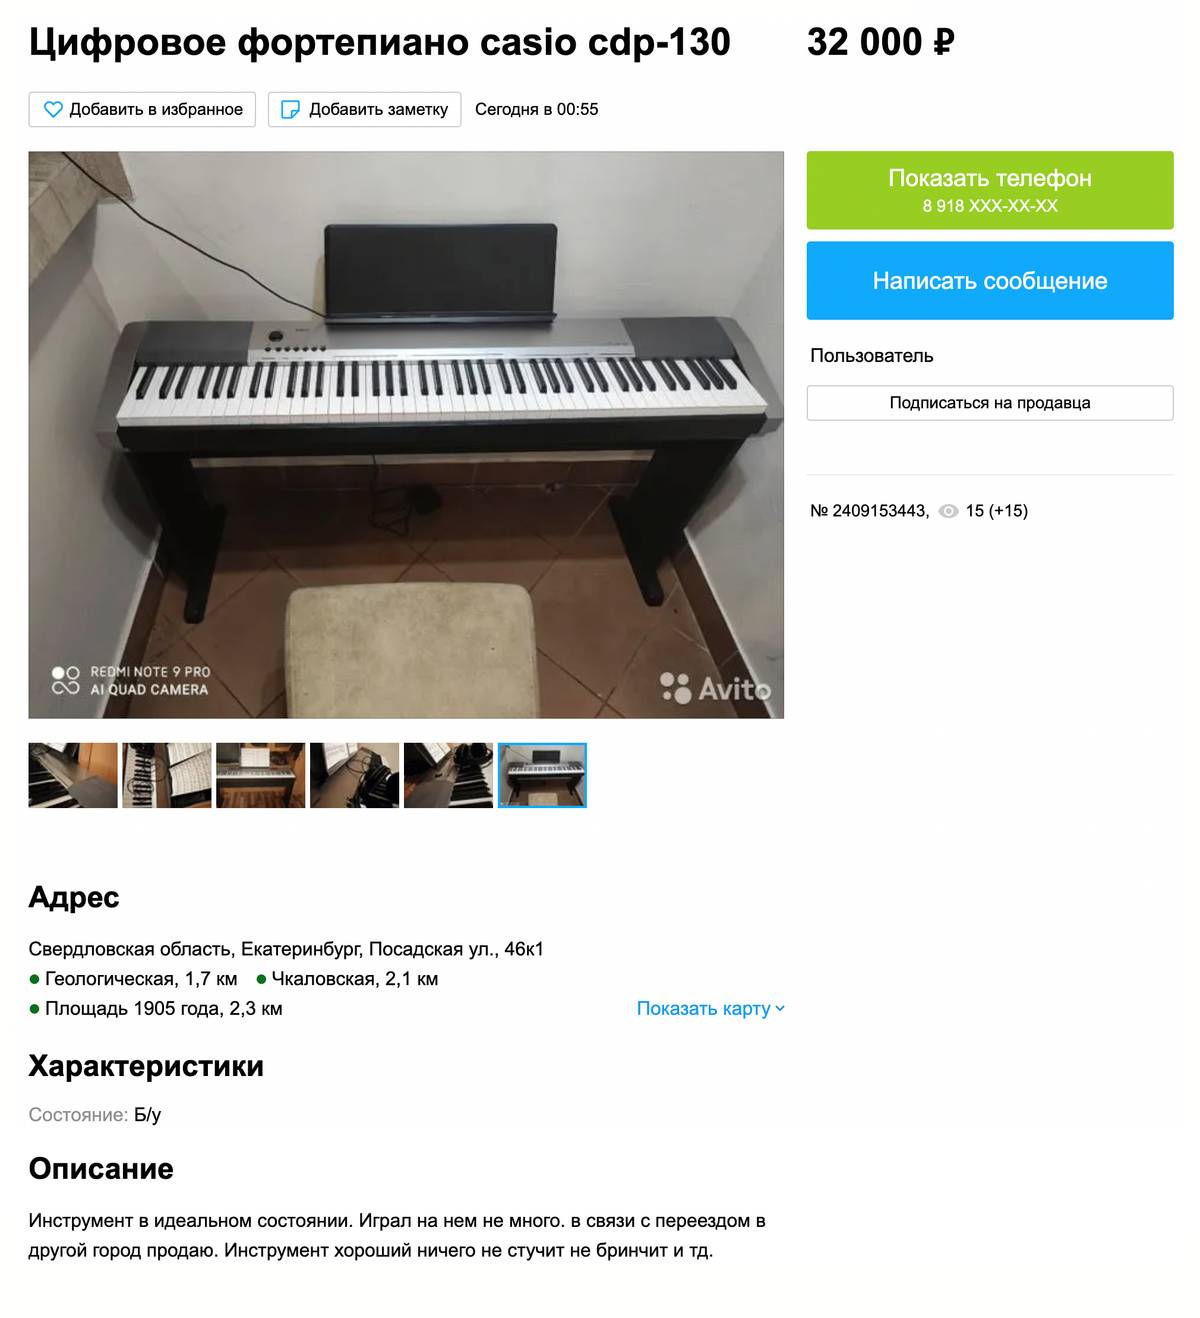 Пианино на фото выглядит как новое, уверена, на нем играли мало. Цена высокая для&nbsp;подержанного инструмента, но объявление опубликовано в областном городке — там будет немного покупателей, можно поторговаться. Источник: avito.ru